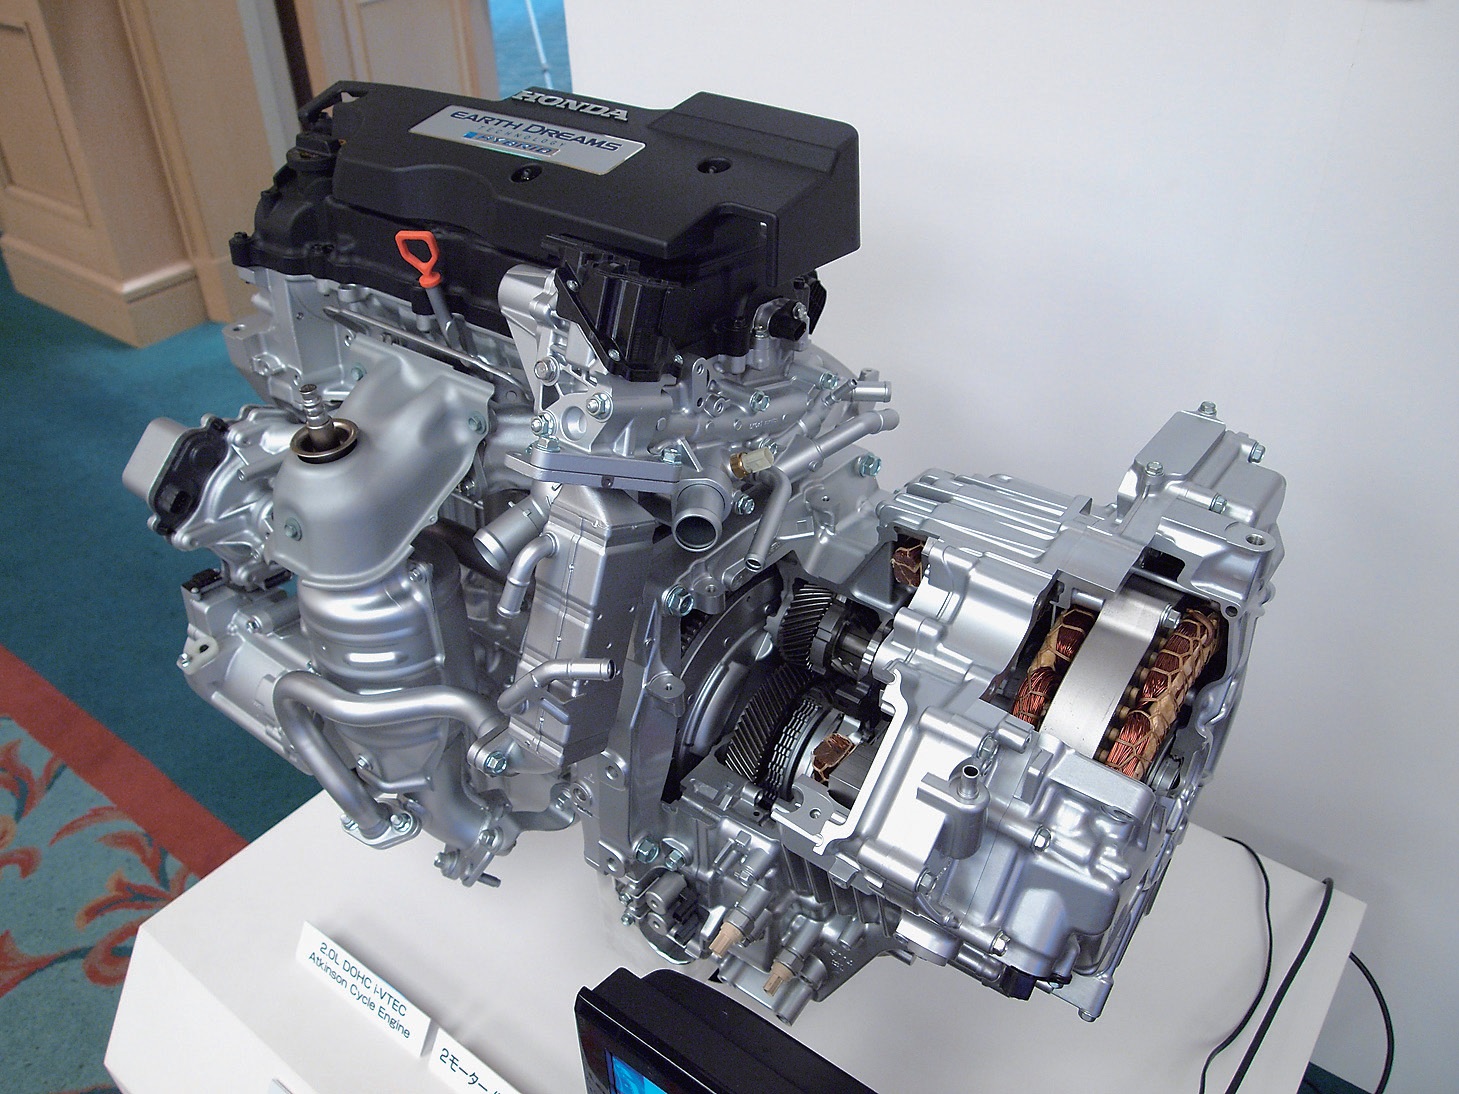 駆動用モーターは169ps／31.3kgm エンジンは直4、2LVTECアトキンソンサイクルで143ps／16.8kgm 搭載されるエンジンは1993ccの直列4気筒。VTECを駆使したアトキンソンサイクルで143ps／6200rpm、16.8kgm／3500～6000rpm。モーターは駆動用と発電用の2つ搭載され、駆動用モーターは169ps／31.3kgmというハイパワー。70km／h以下の速度域ではエンジンは駆動には参加せずもっぱら発電用となっていて、走行用にはモーターのみが使用されるのがポイント。高速巡航時は逆にエンジンが駆動に参加することになる